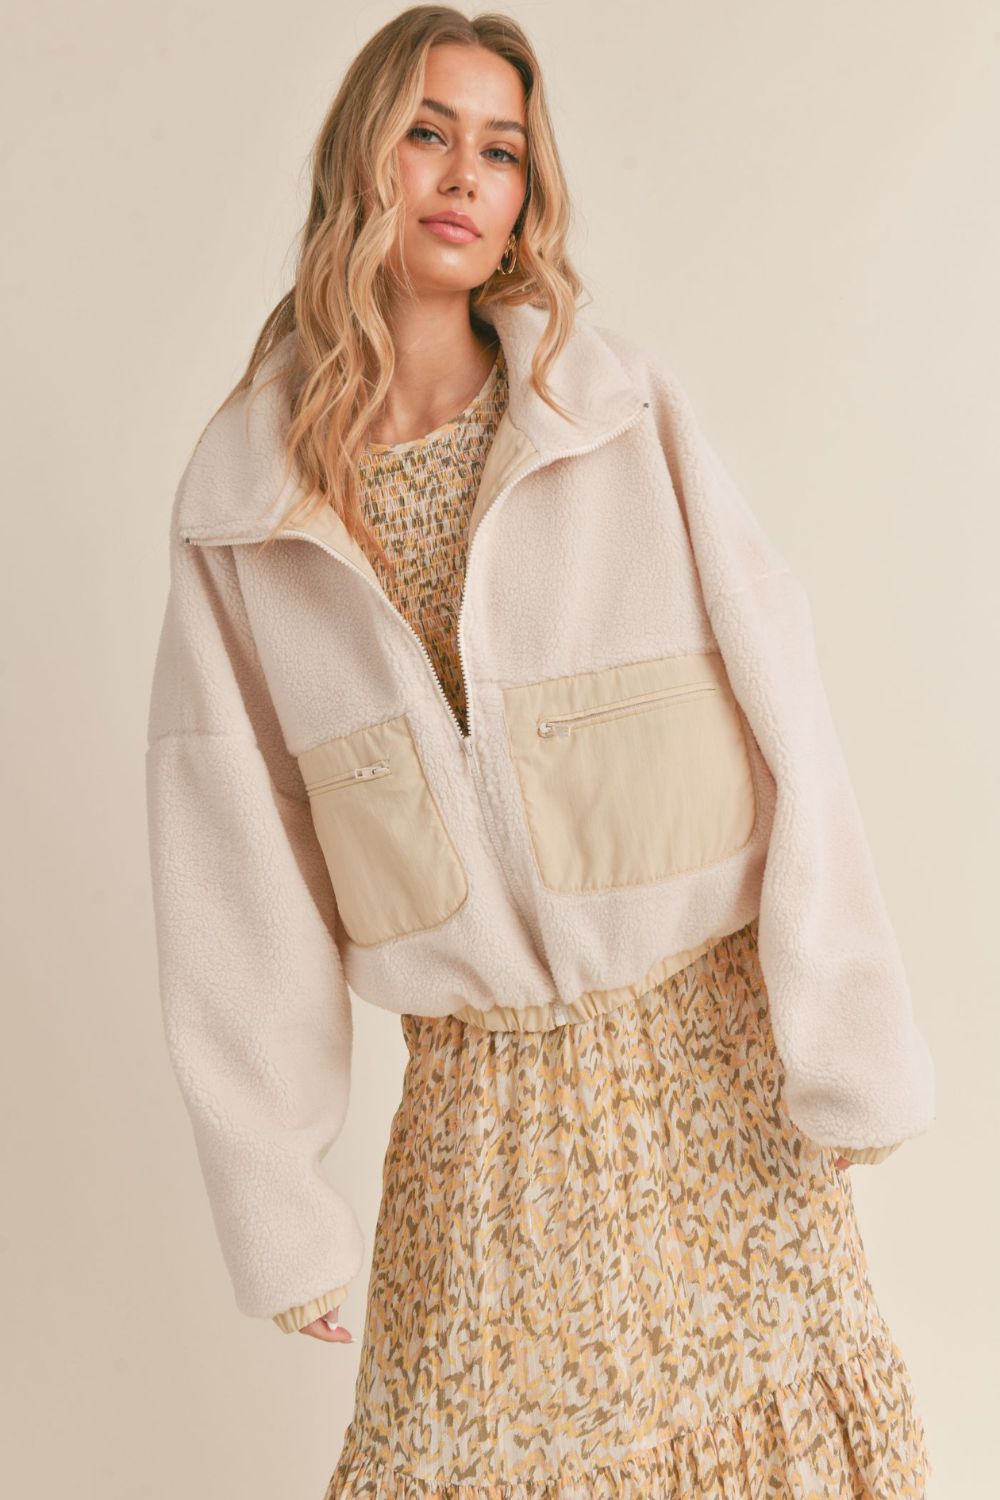 Women's Cozy Fleece Jacket | Zip Front Coat | Ivory - Women's Jacket - Blooming Daily